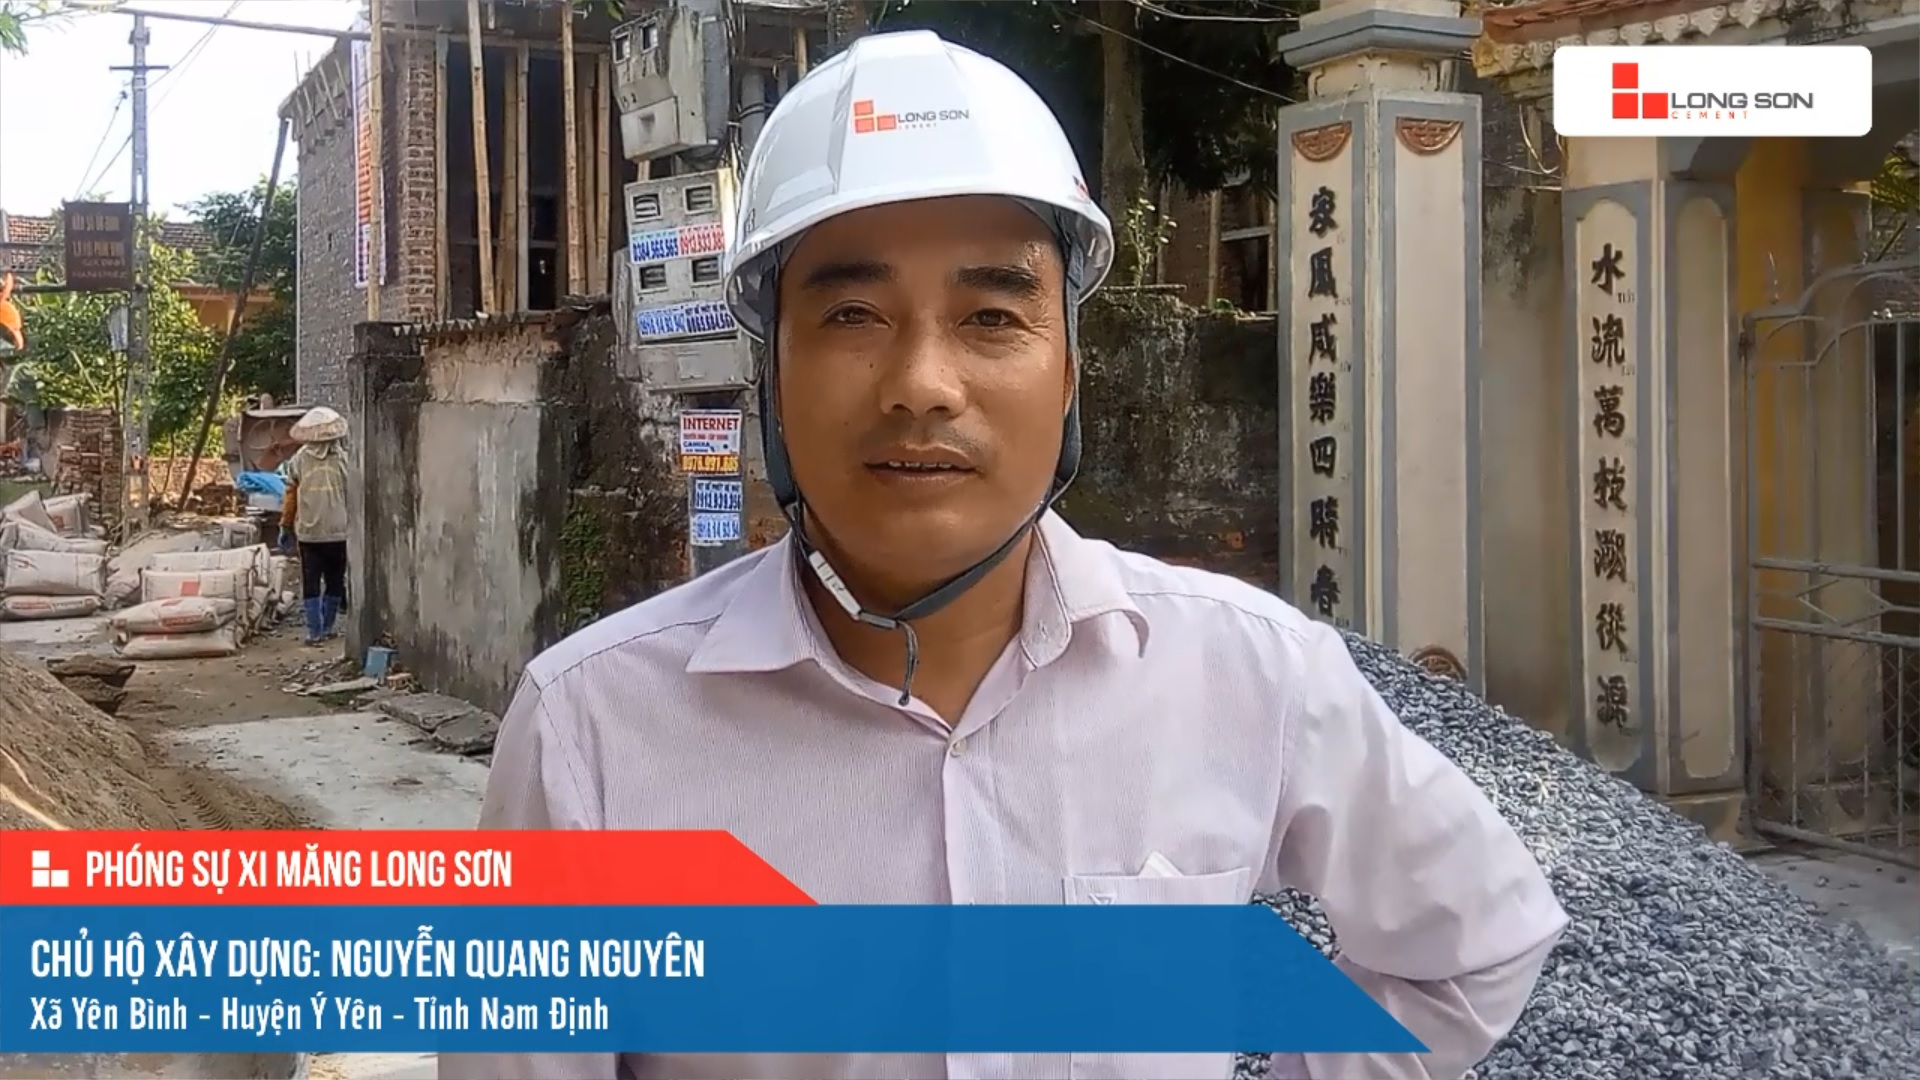 Phóng sự công trình sử dụng xi măng Long Sơn tại Nam Định ngày 15/07/2021